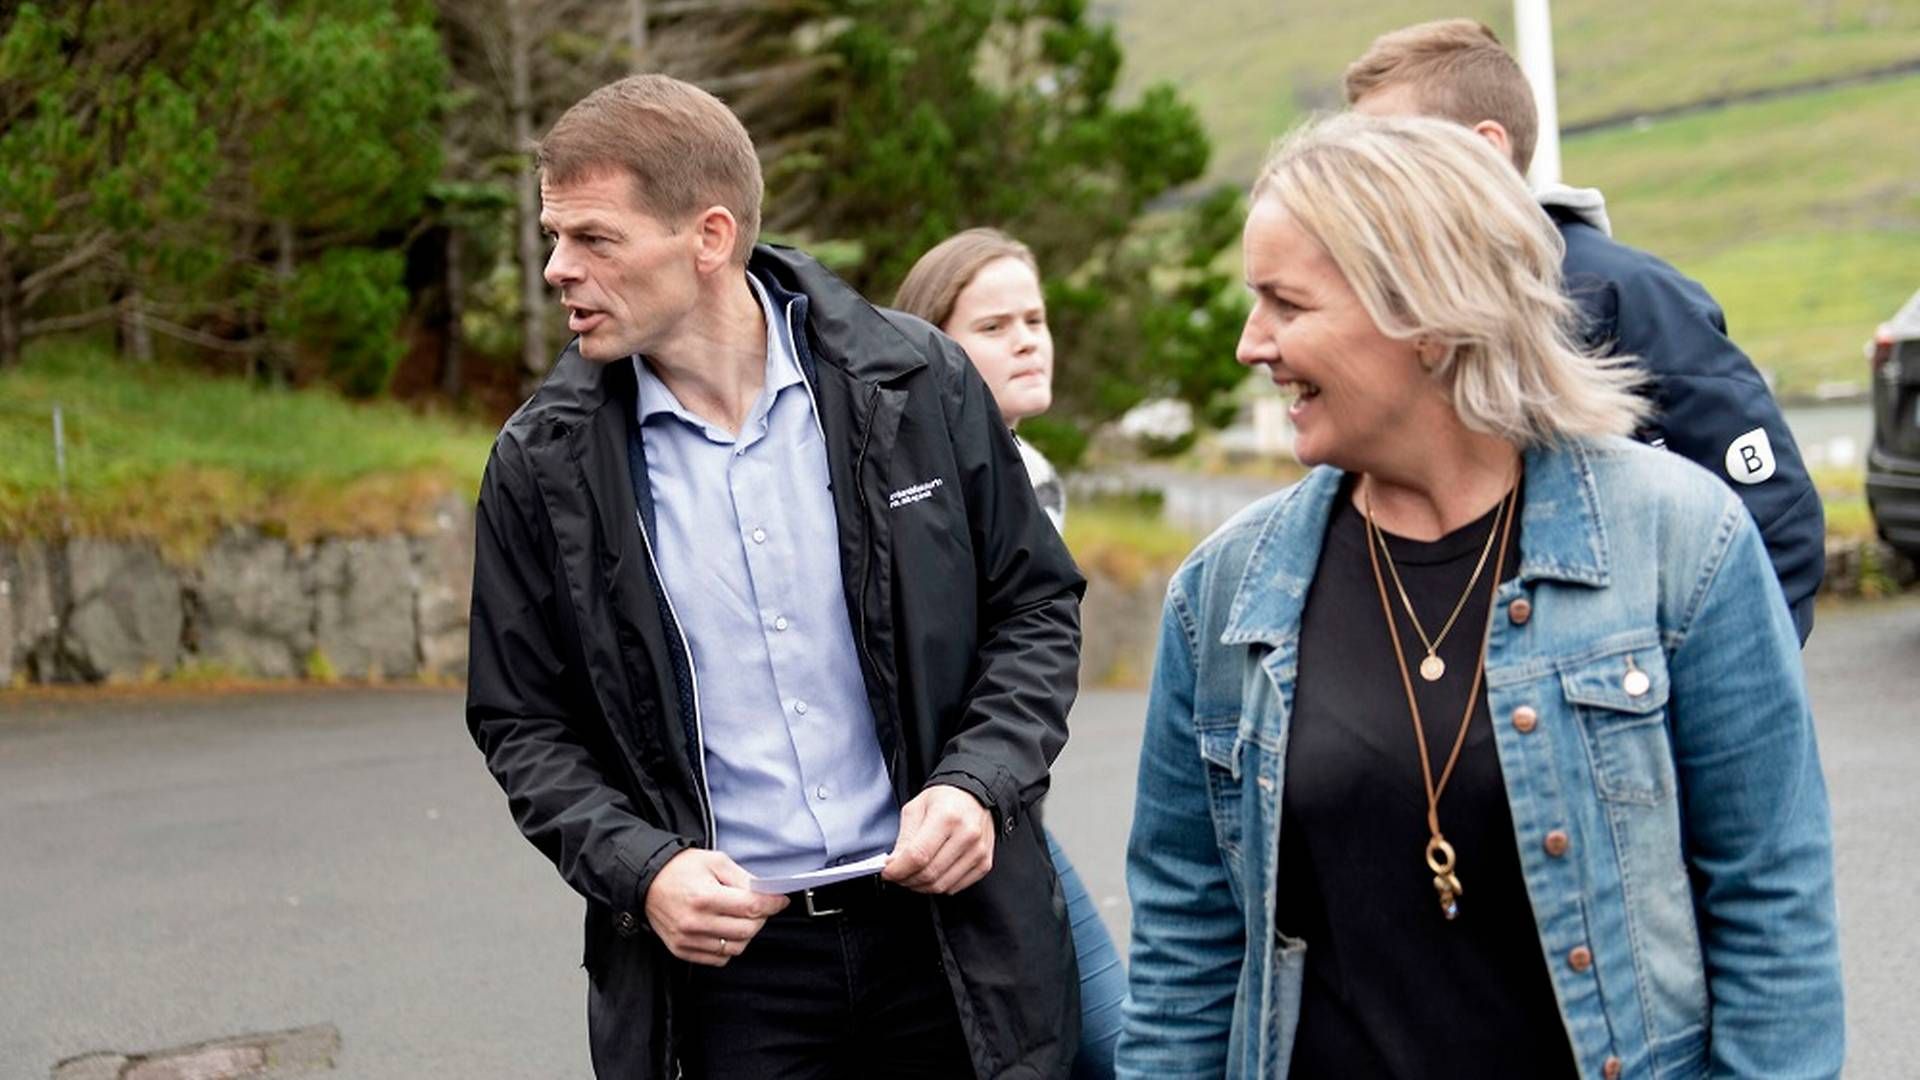 47-årige Bárður á Steig Nielsen (til venstre) afløste i 2015 partifællen Kaj Leo Johannesen som formand for Sambandspartiet. | Foto: Tróndur Dalsgarð/Ritzau Scanpix